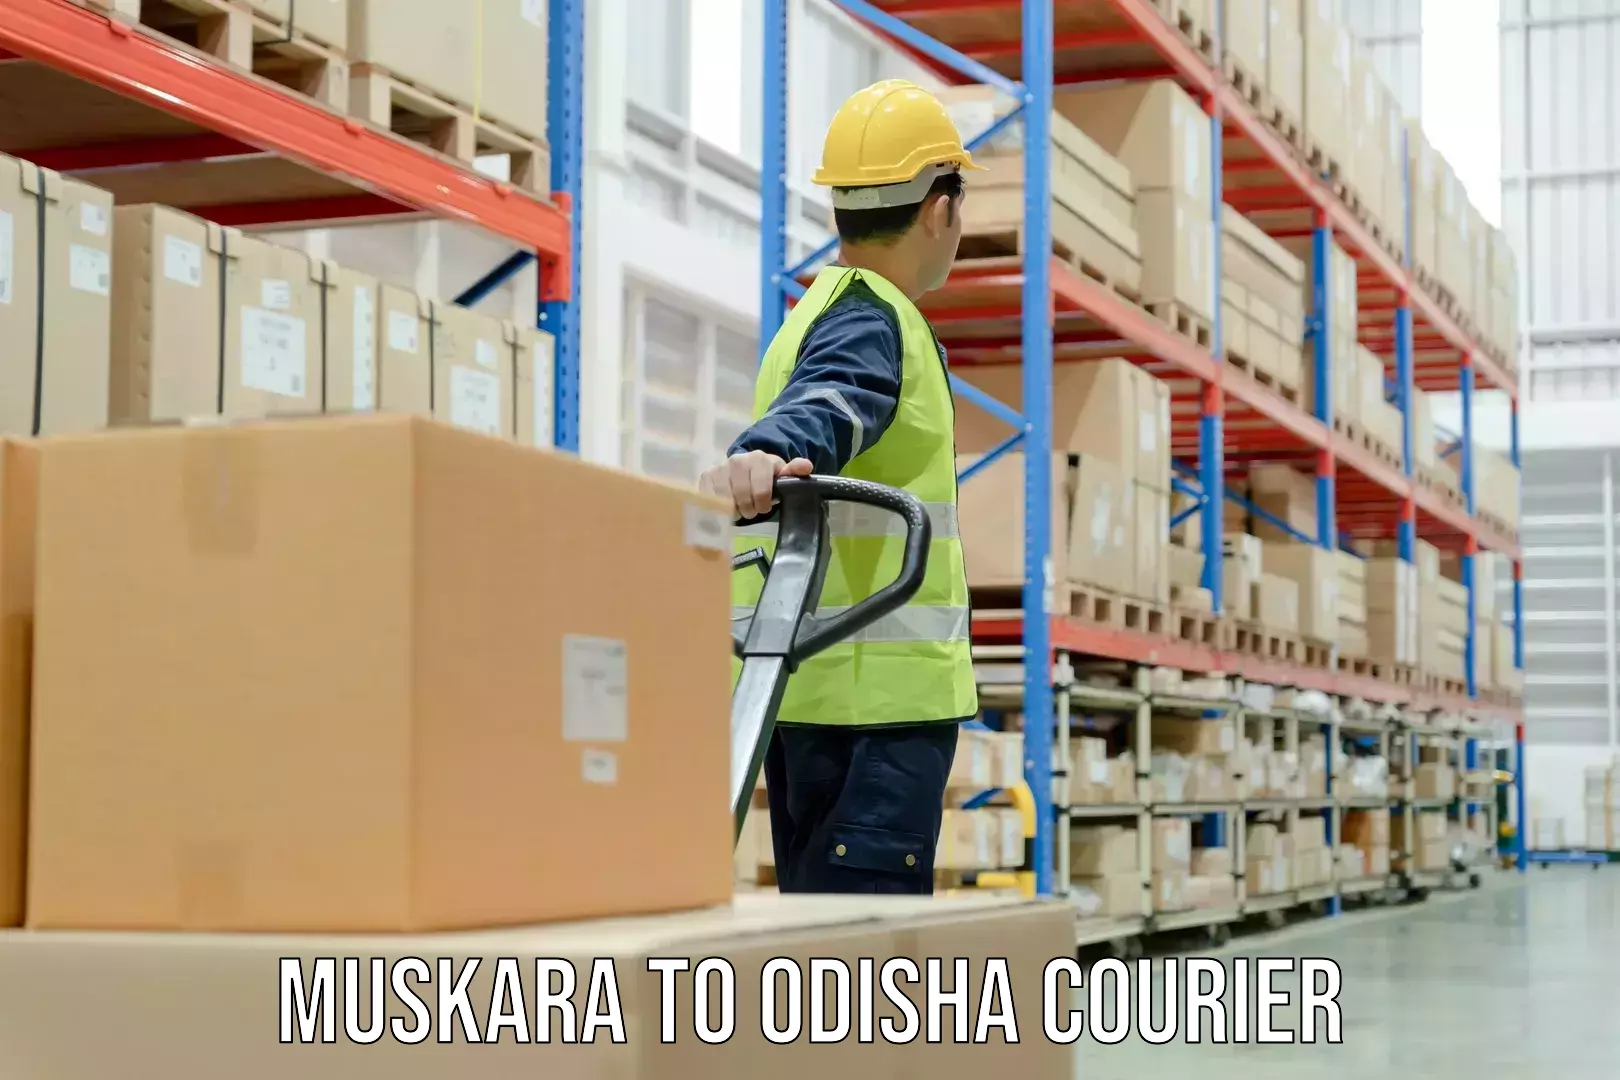 Premium courier services Muskara to Odisha